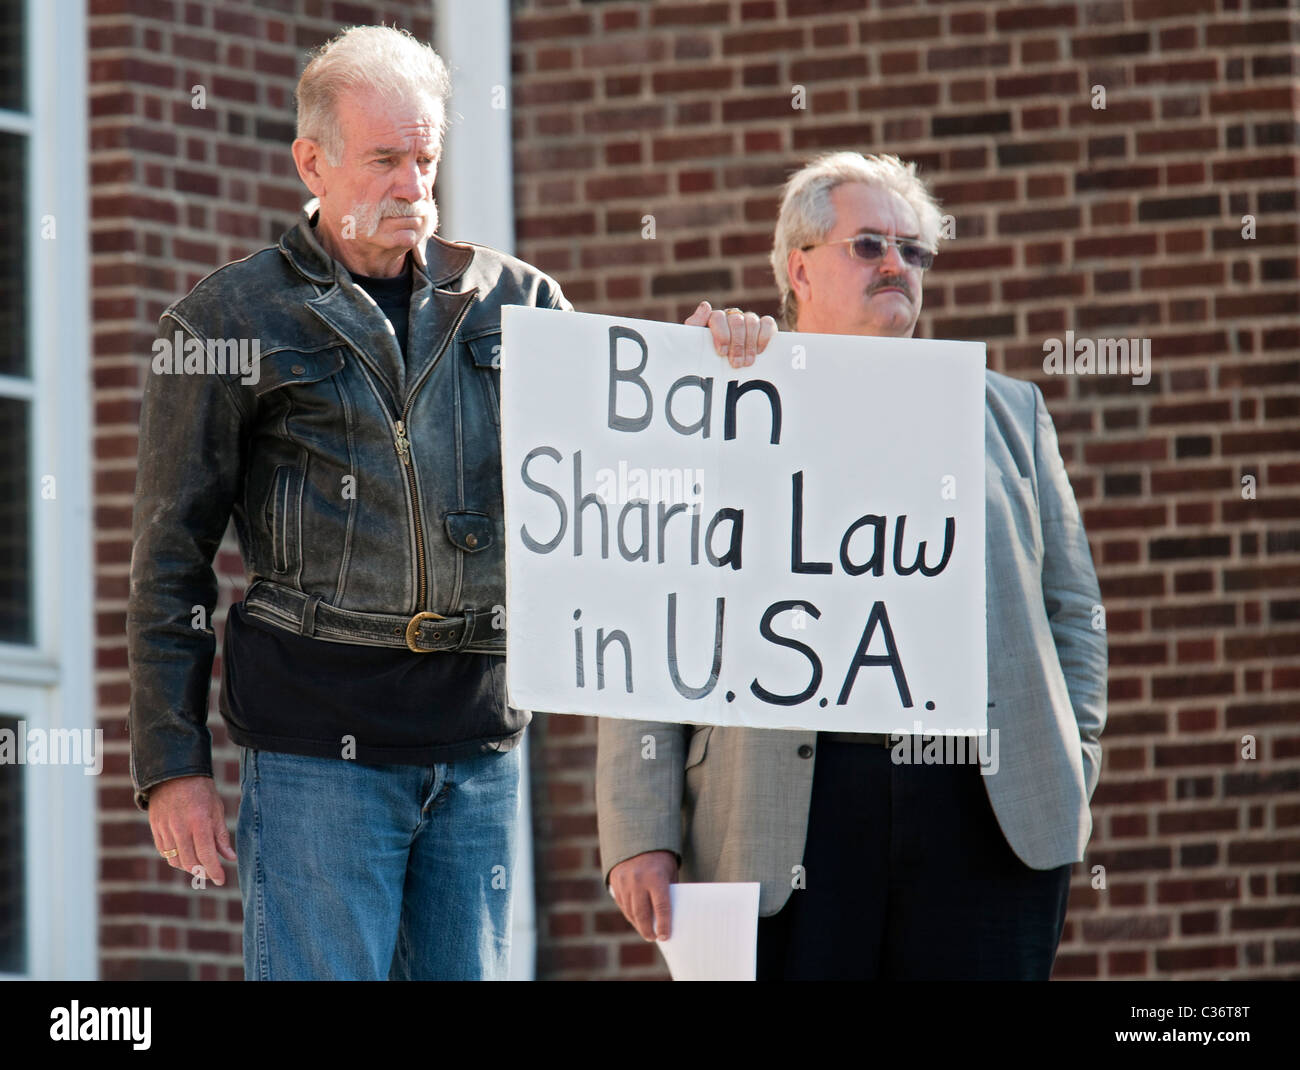 Quran-Burning Pastor de Florida obtiene recepción hostil en Michigan Foto de stock